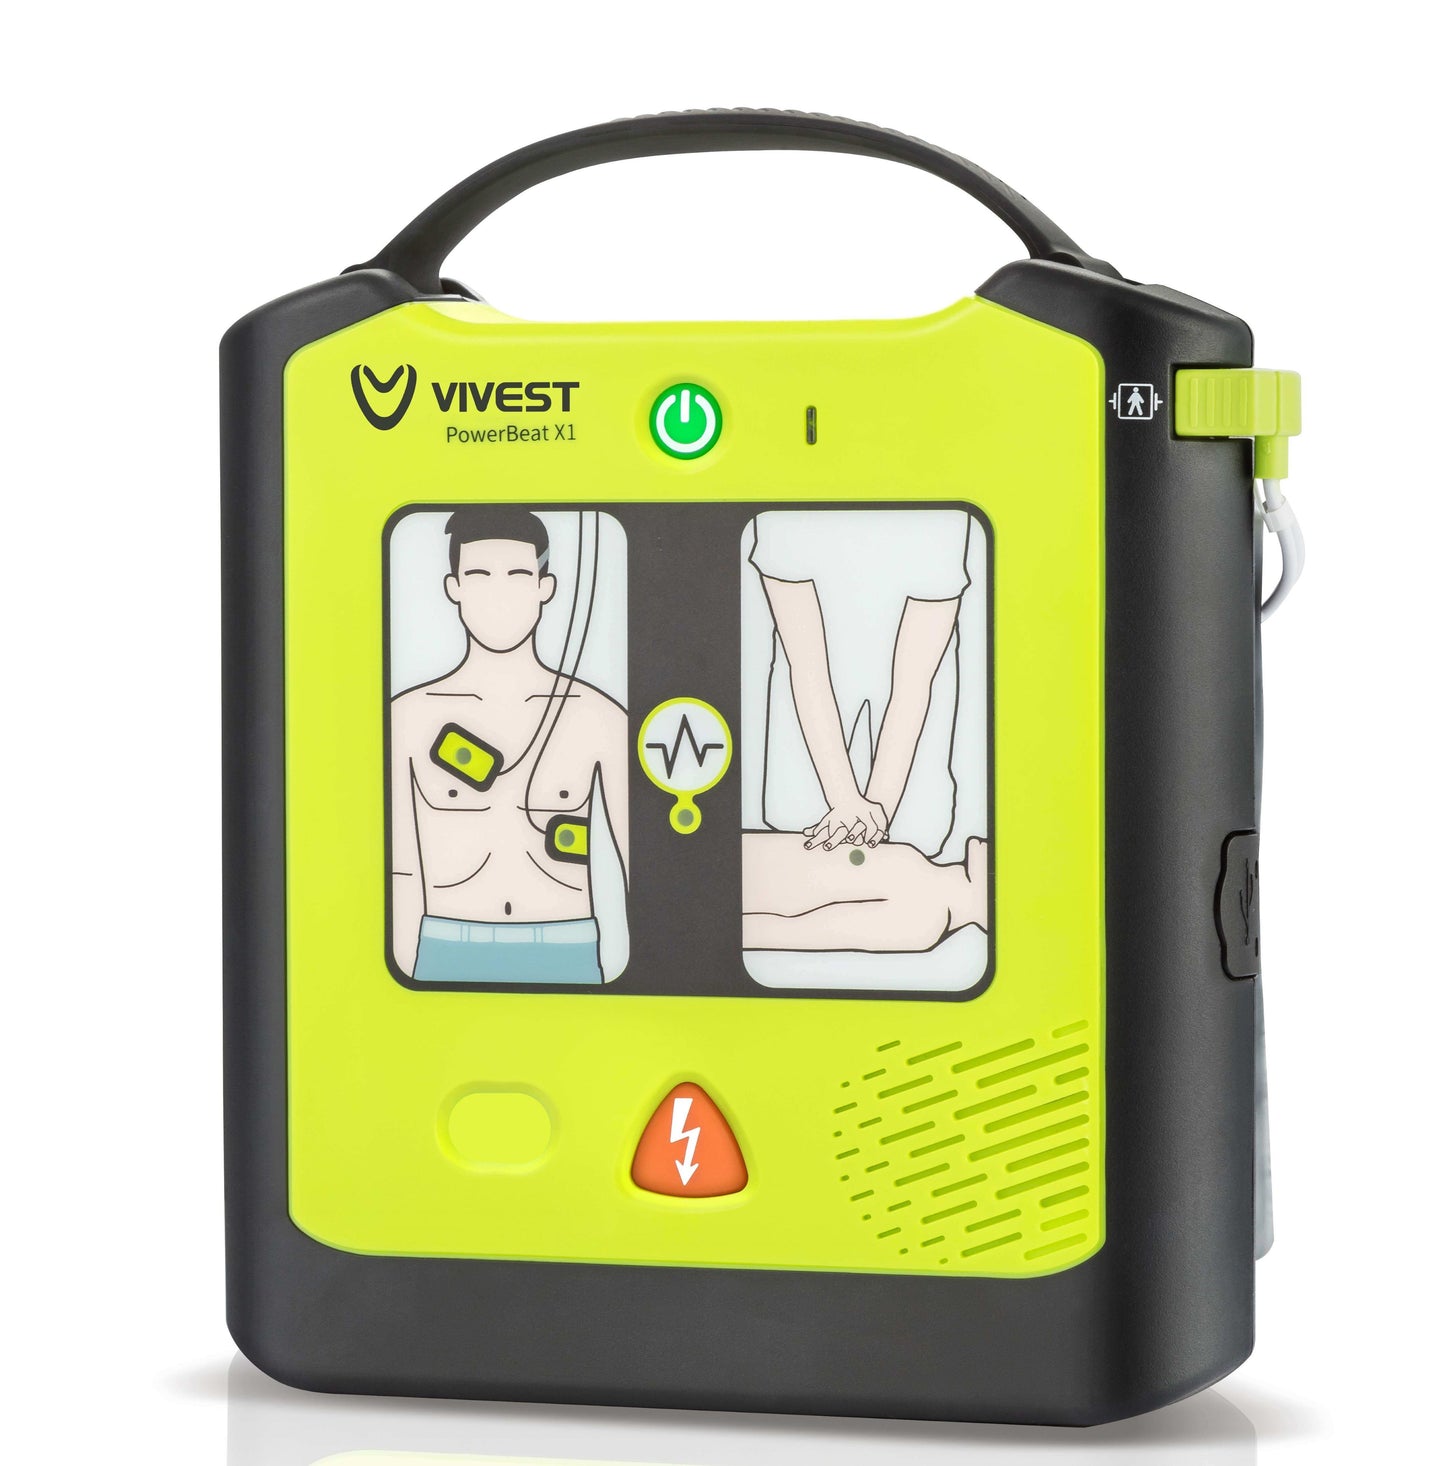 PowerBeat X1 AED ViVest